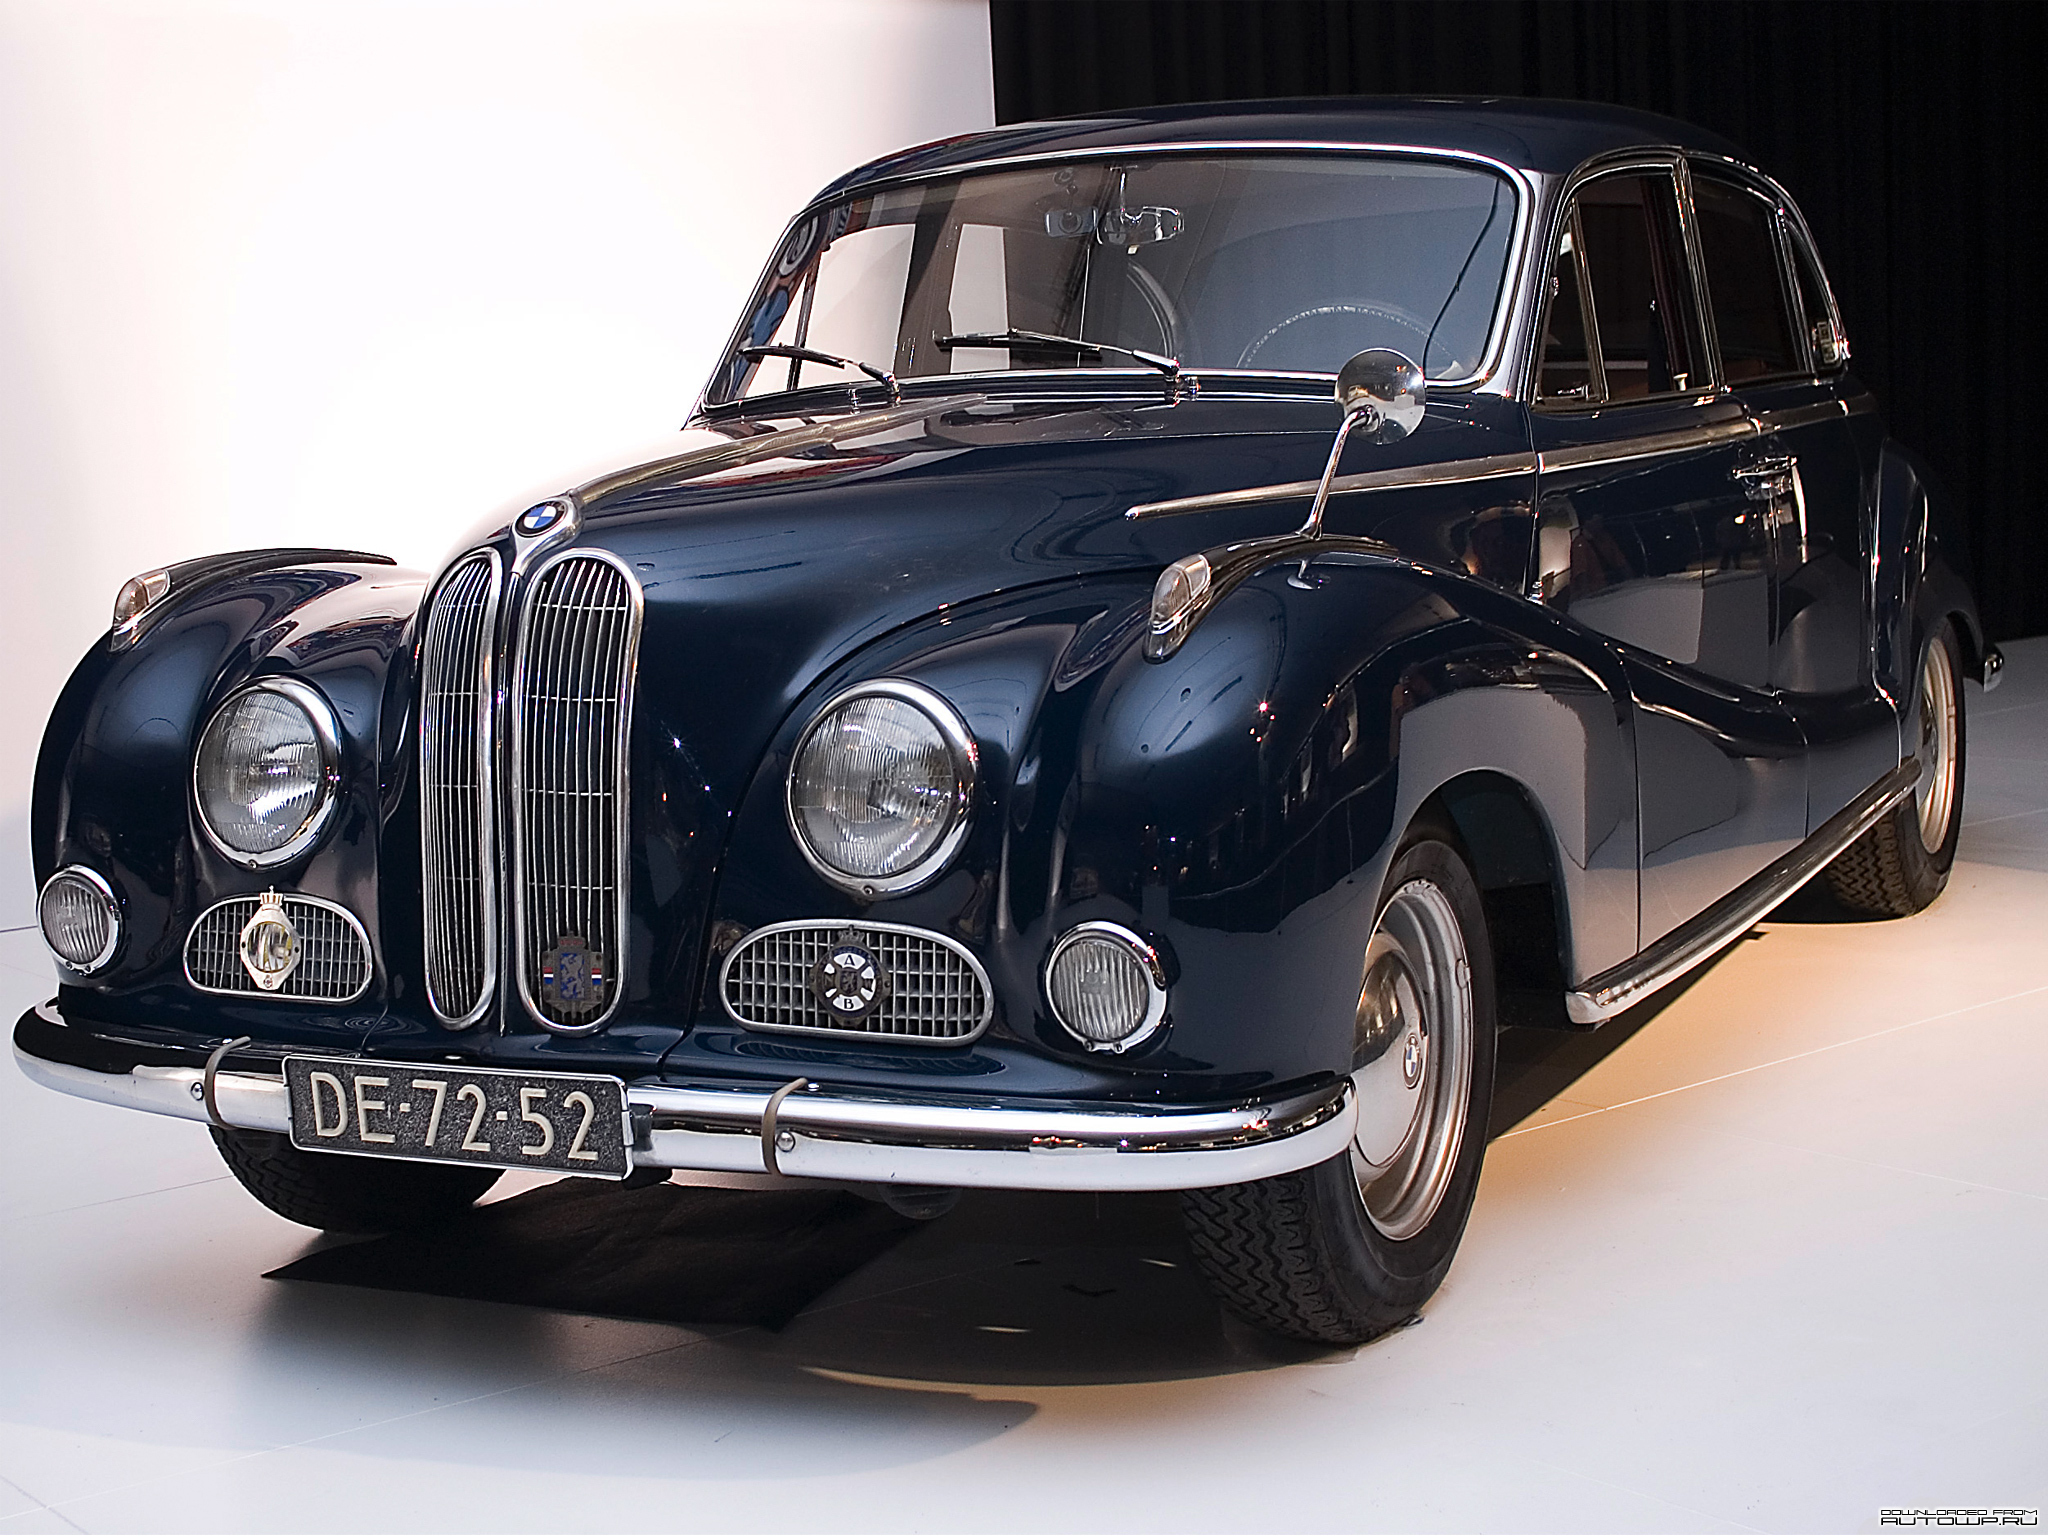 BMW : 501 1952â€“64 â€“ Cars